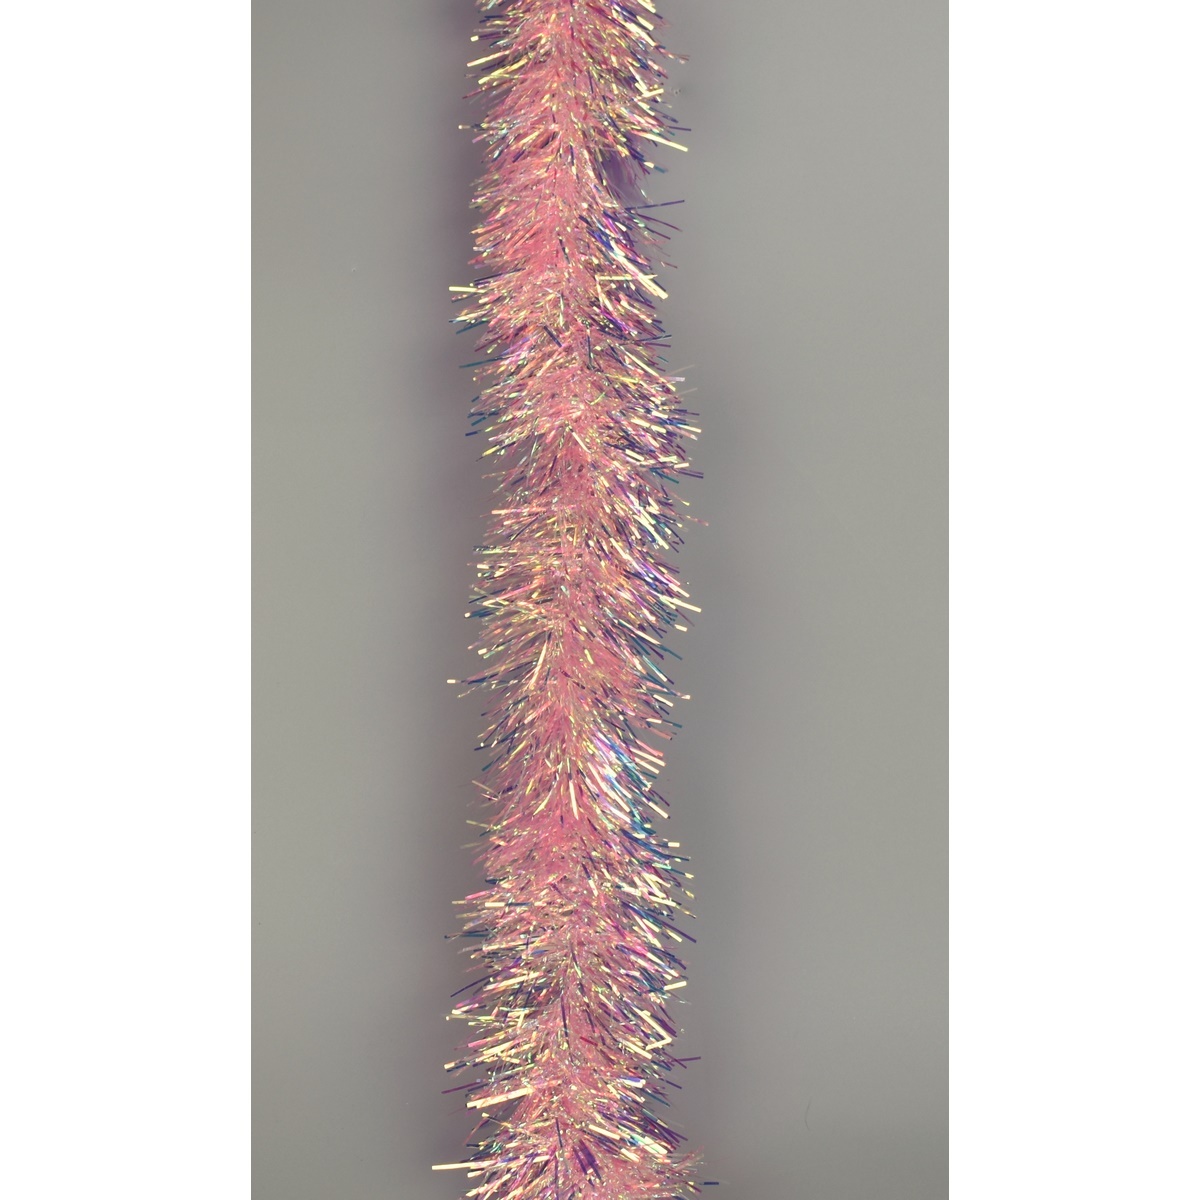 Gilroy karácsonyi füzér, lila, 2 m